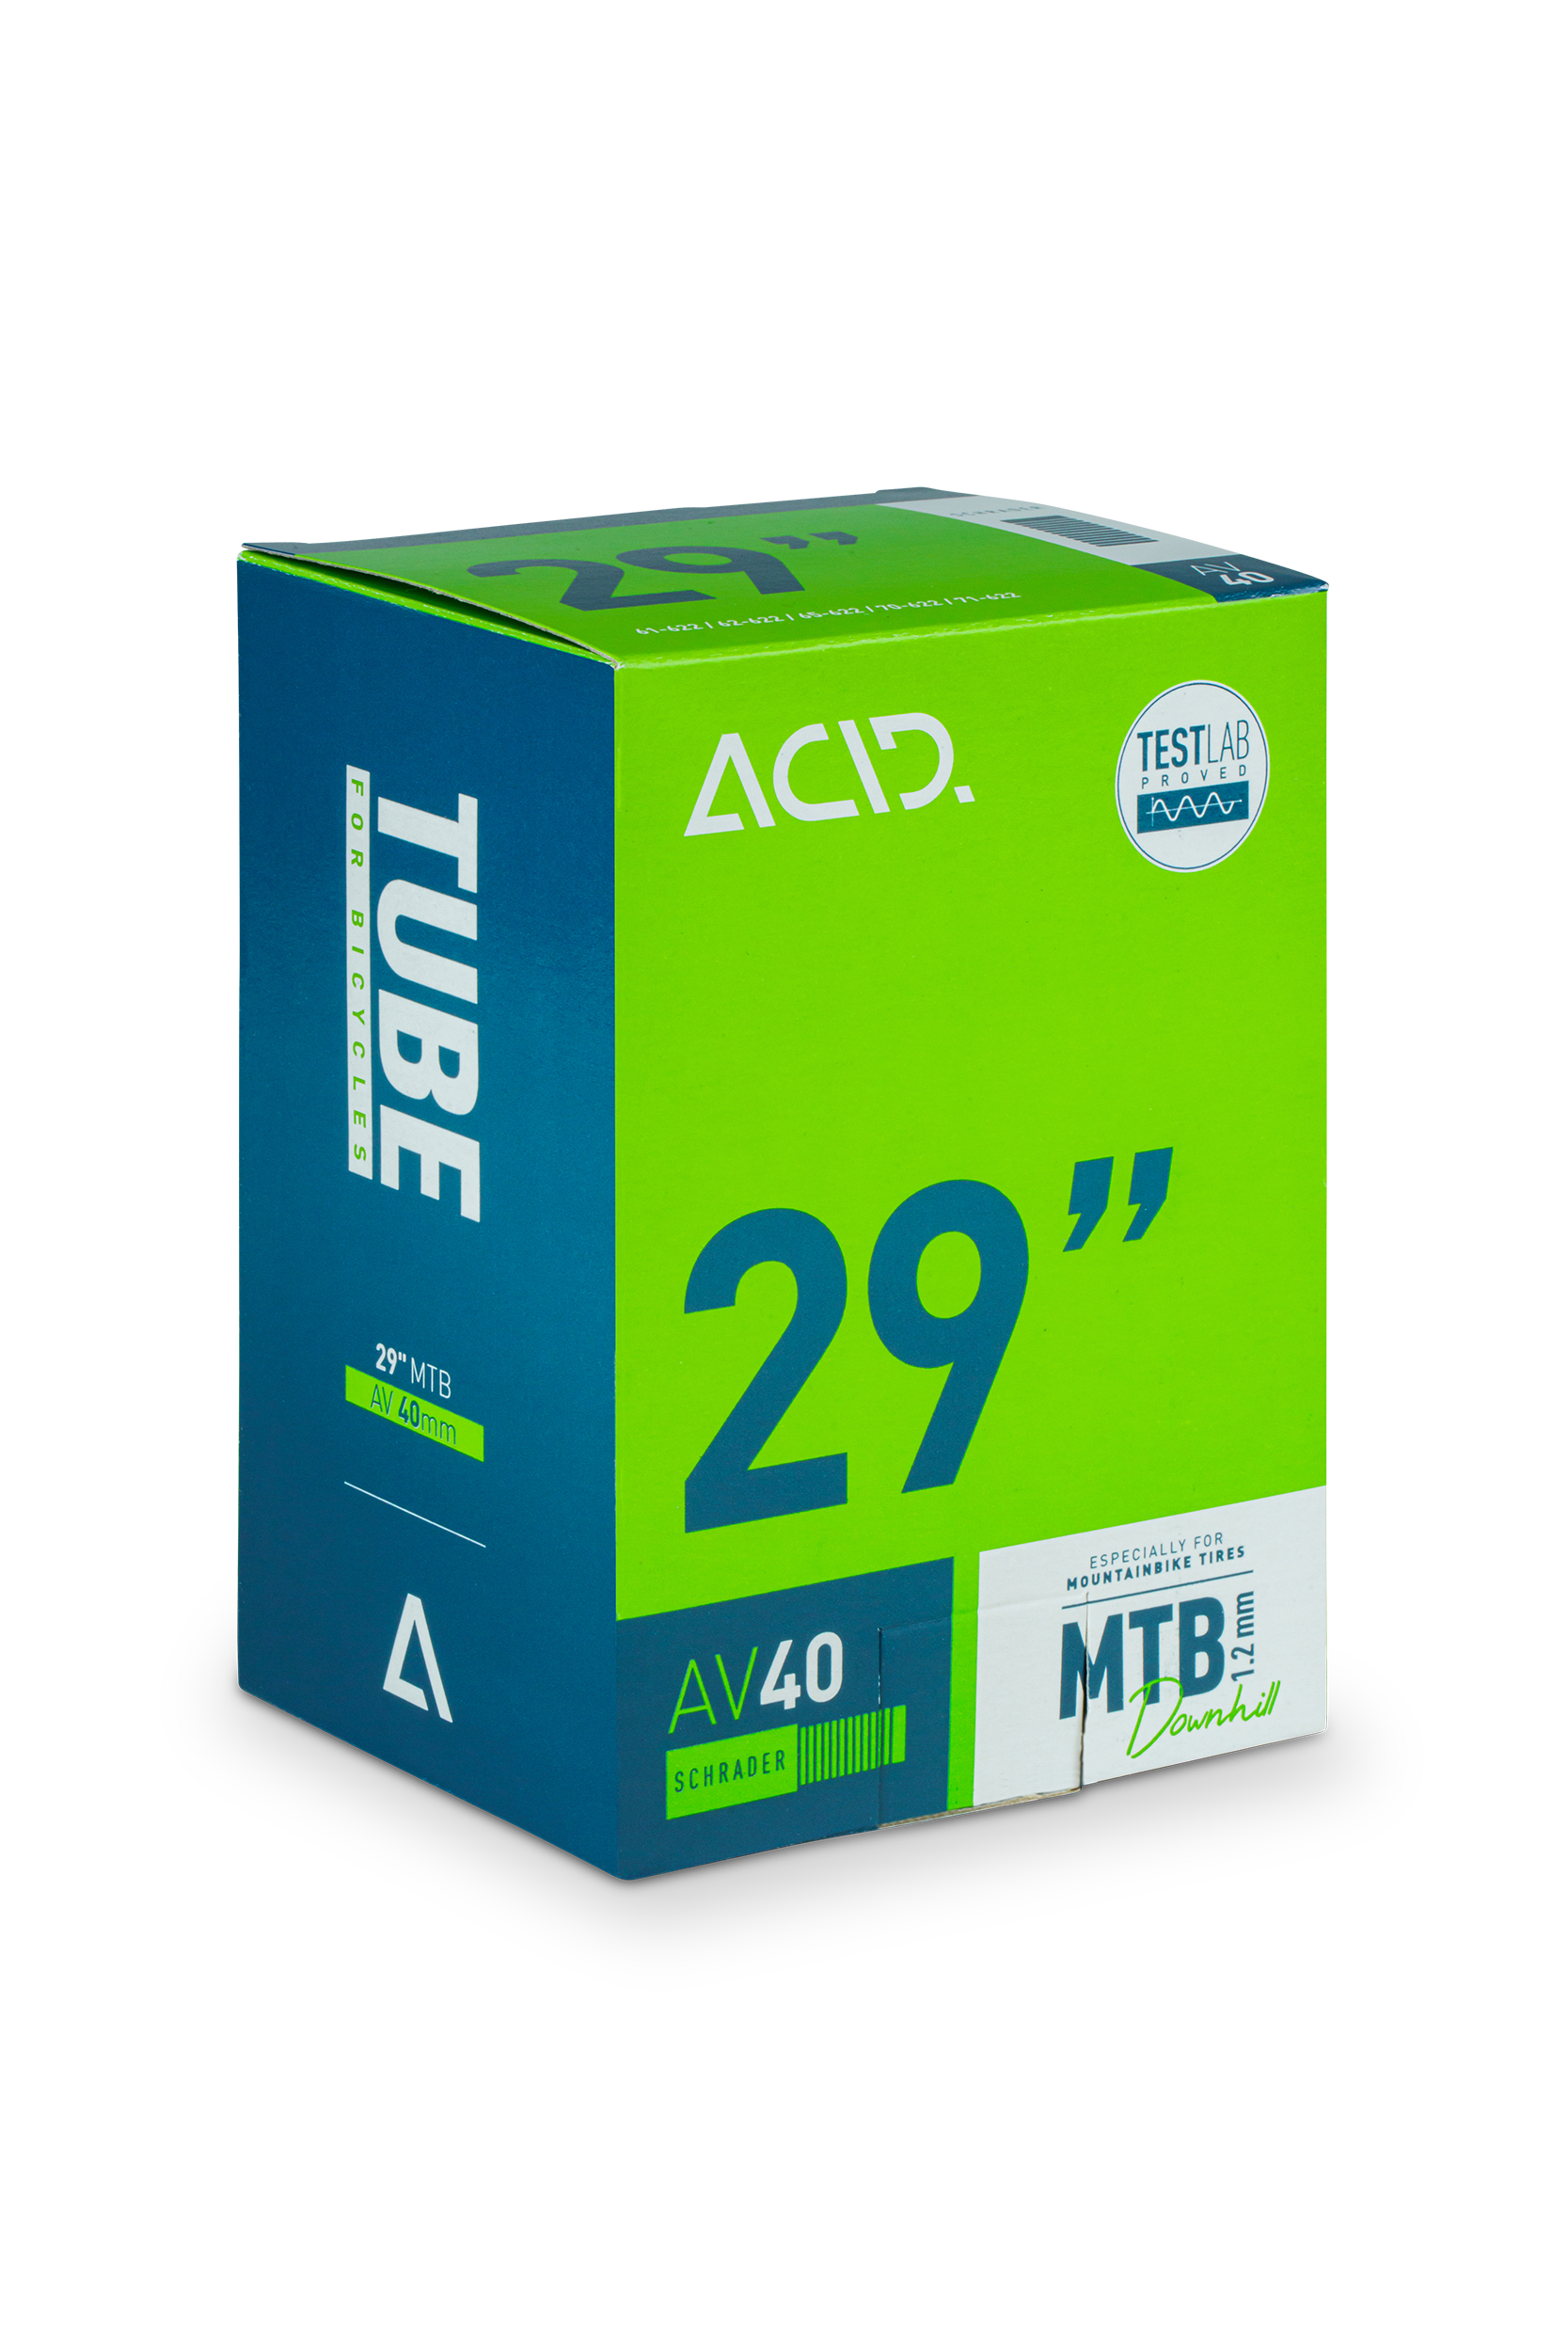 ACID Tube 29" MTB Downhill AGV 40mm